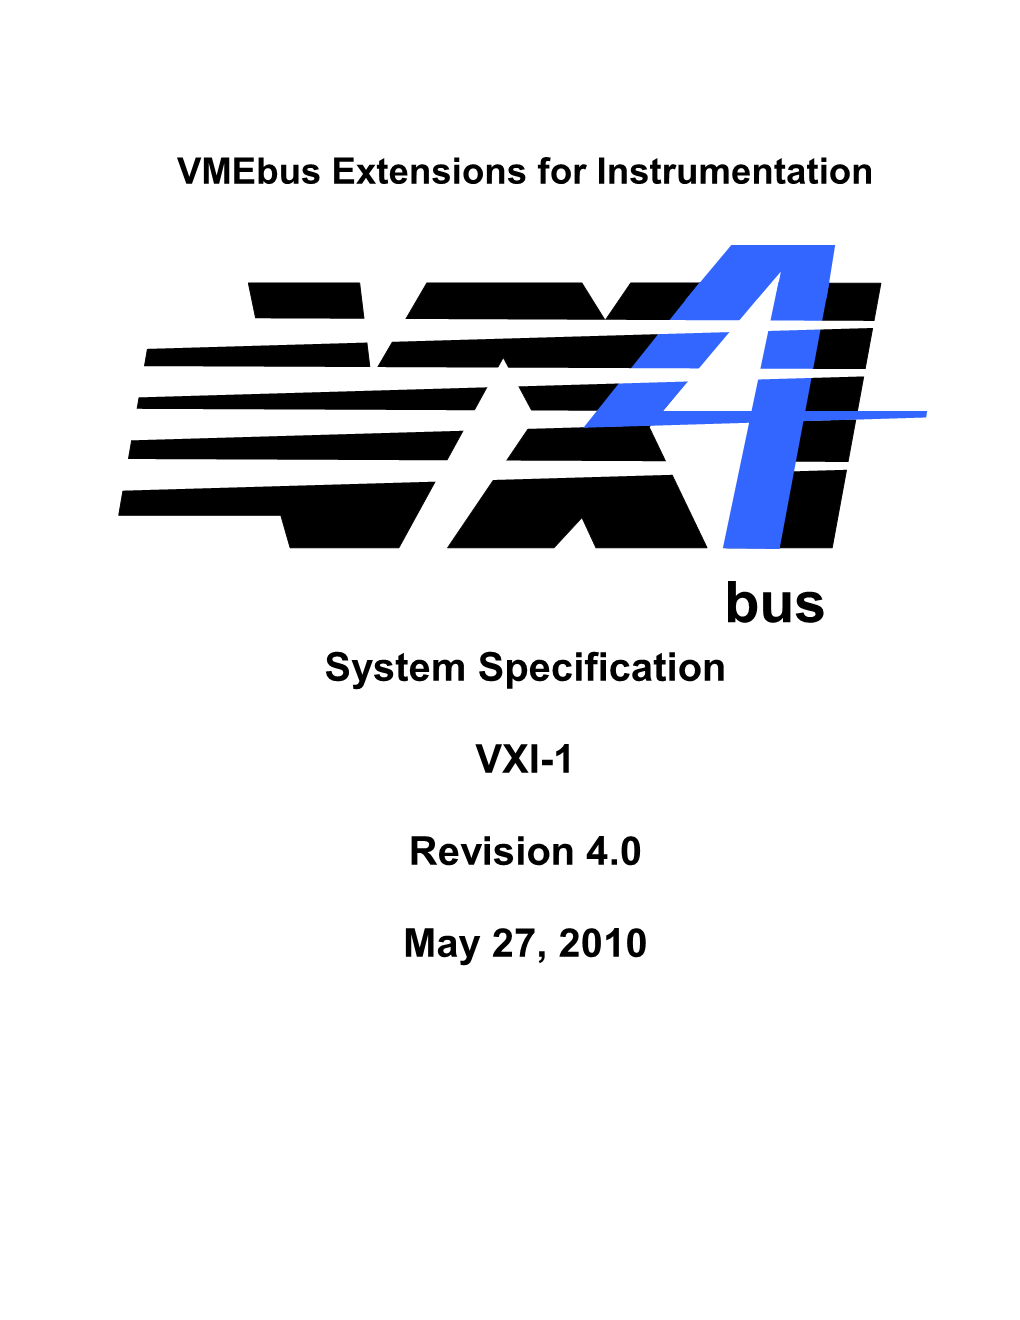 Vmebus Extensions for Instrumentation